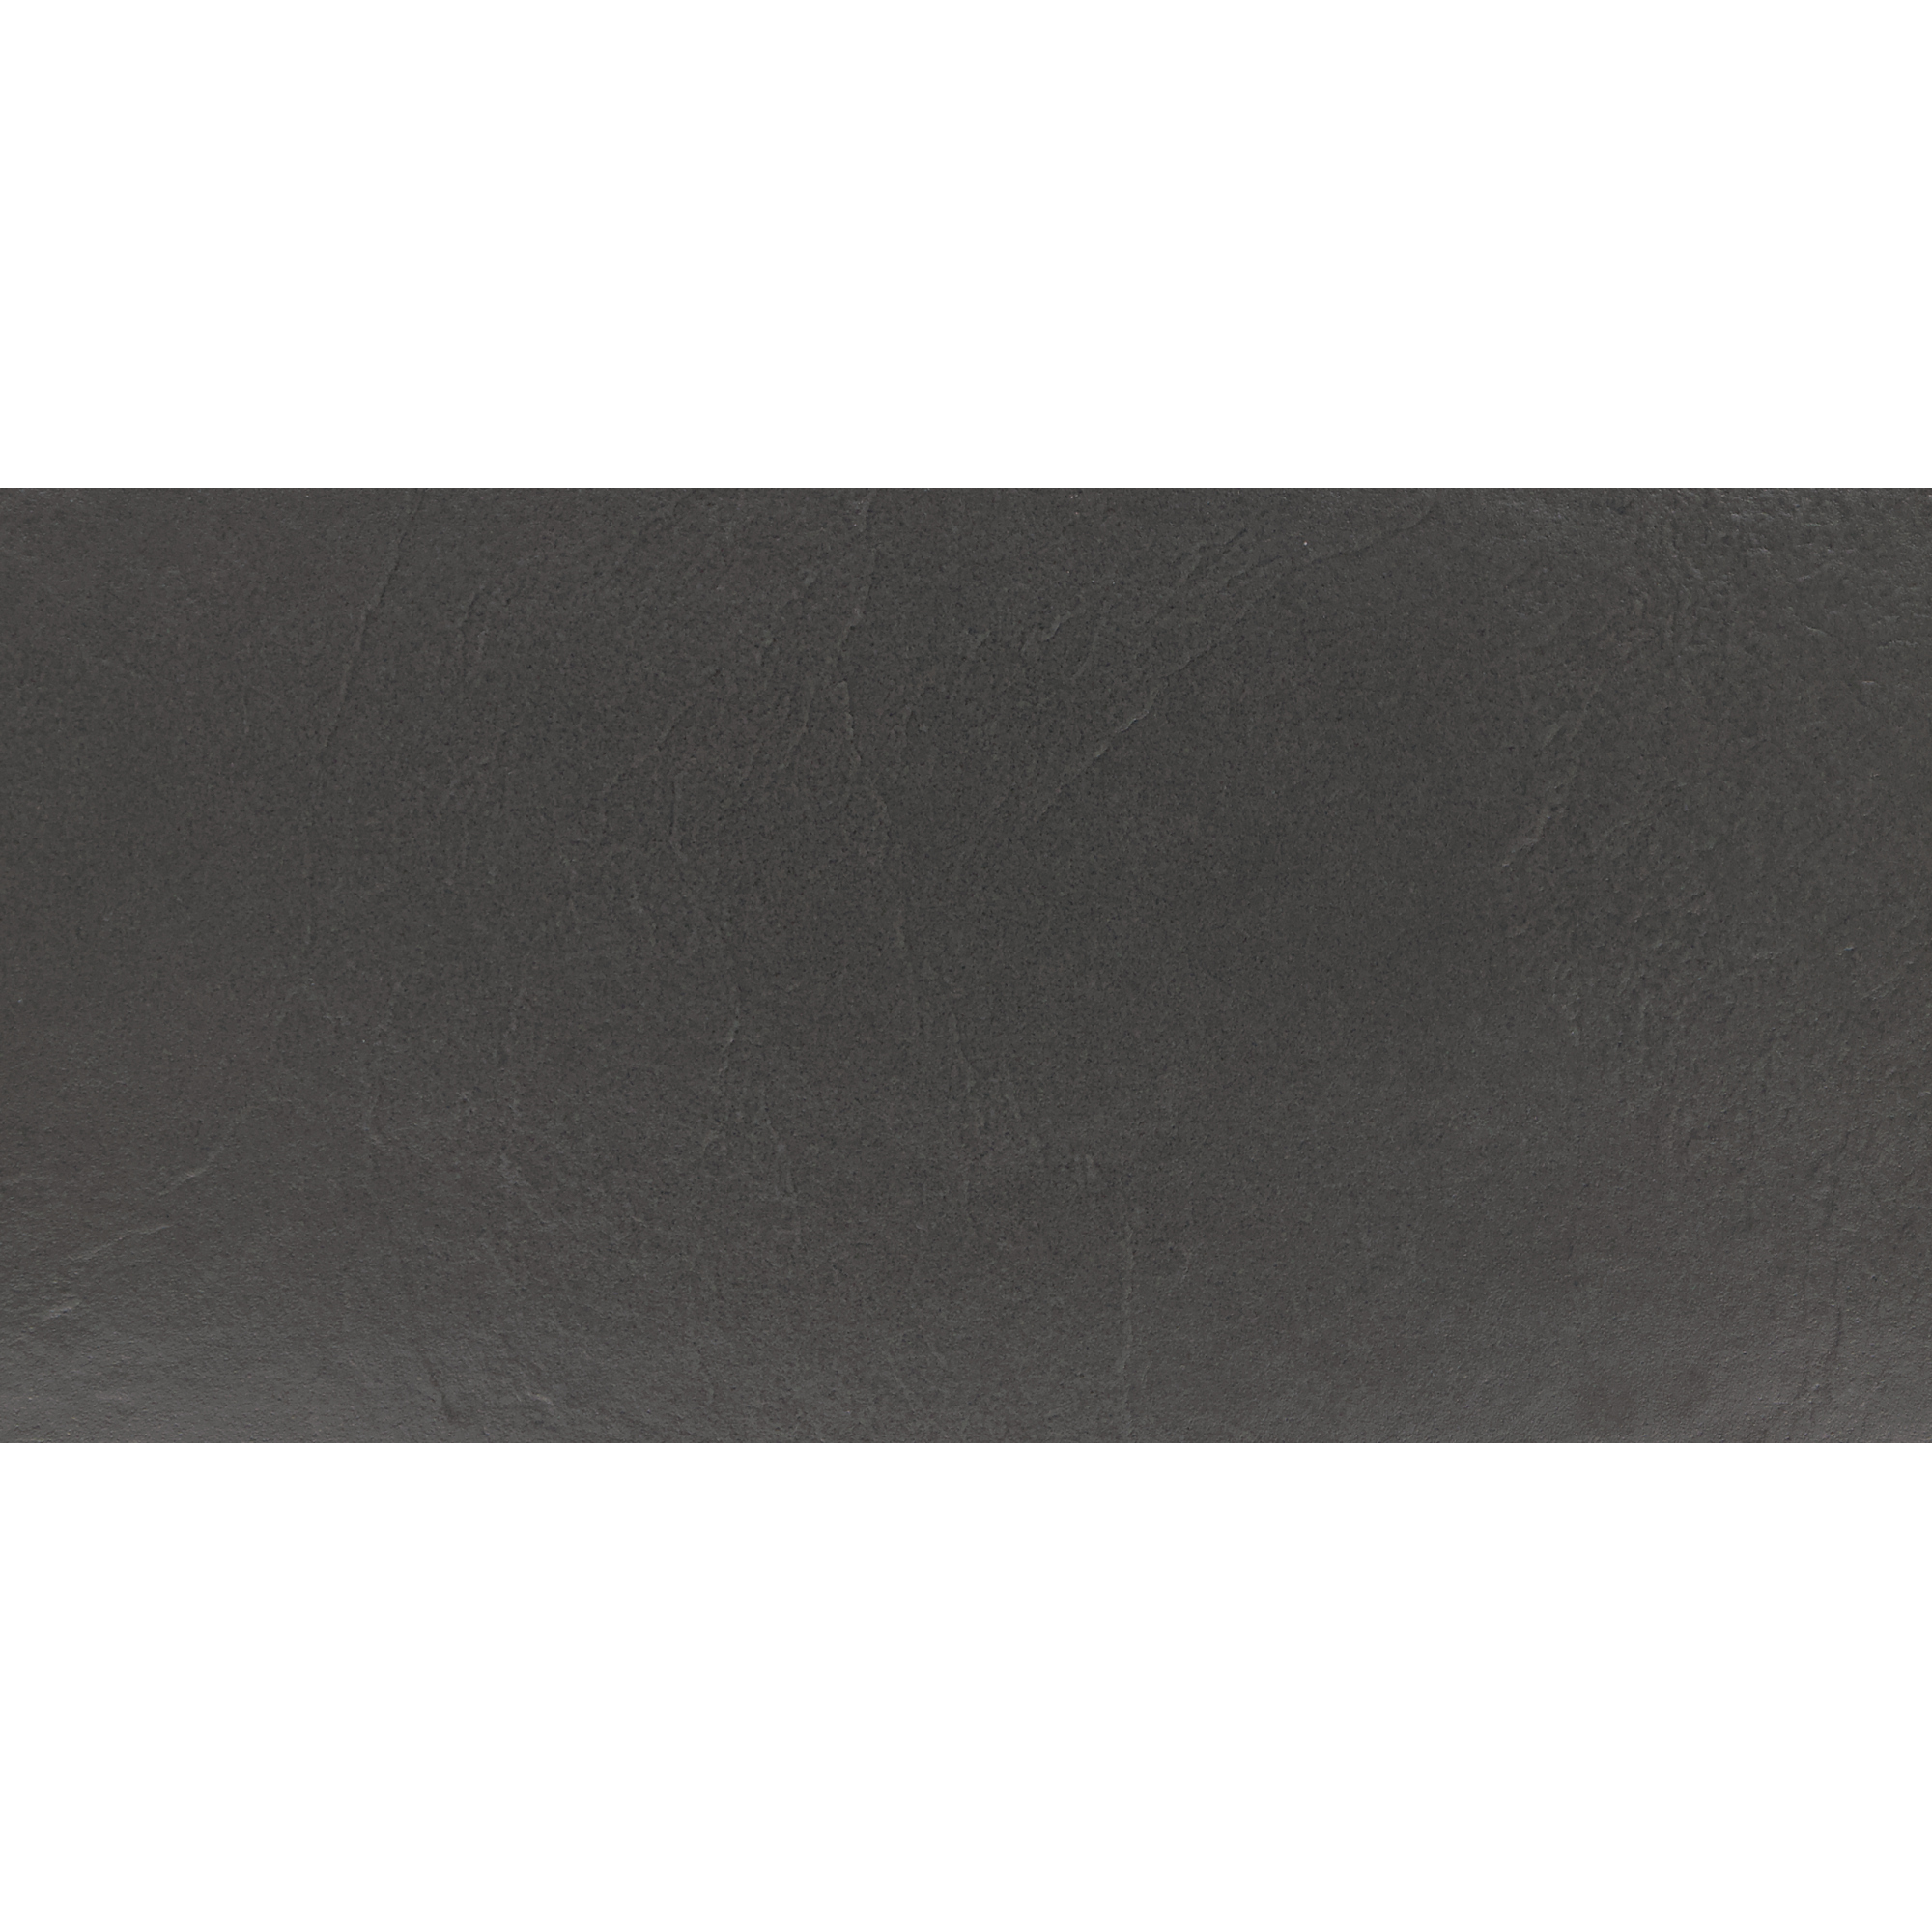 Bodenfliese 'Basalto' Feinsteinzeug schwarz 30,2 x 60,4 cm + product picture